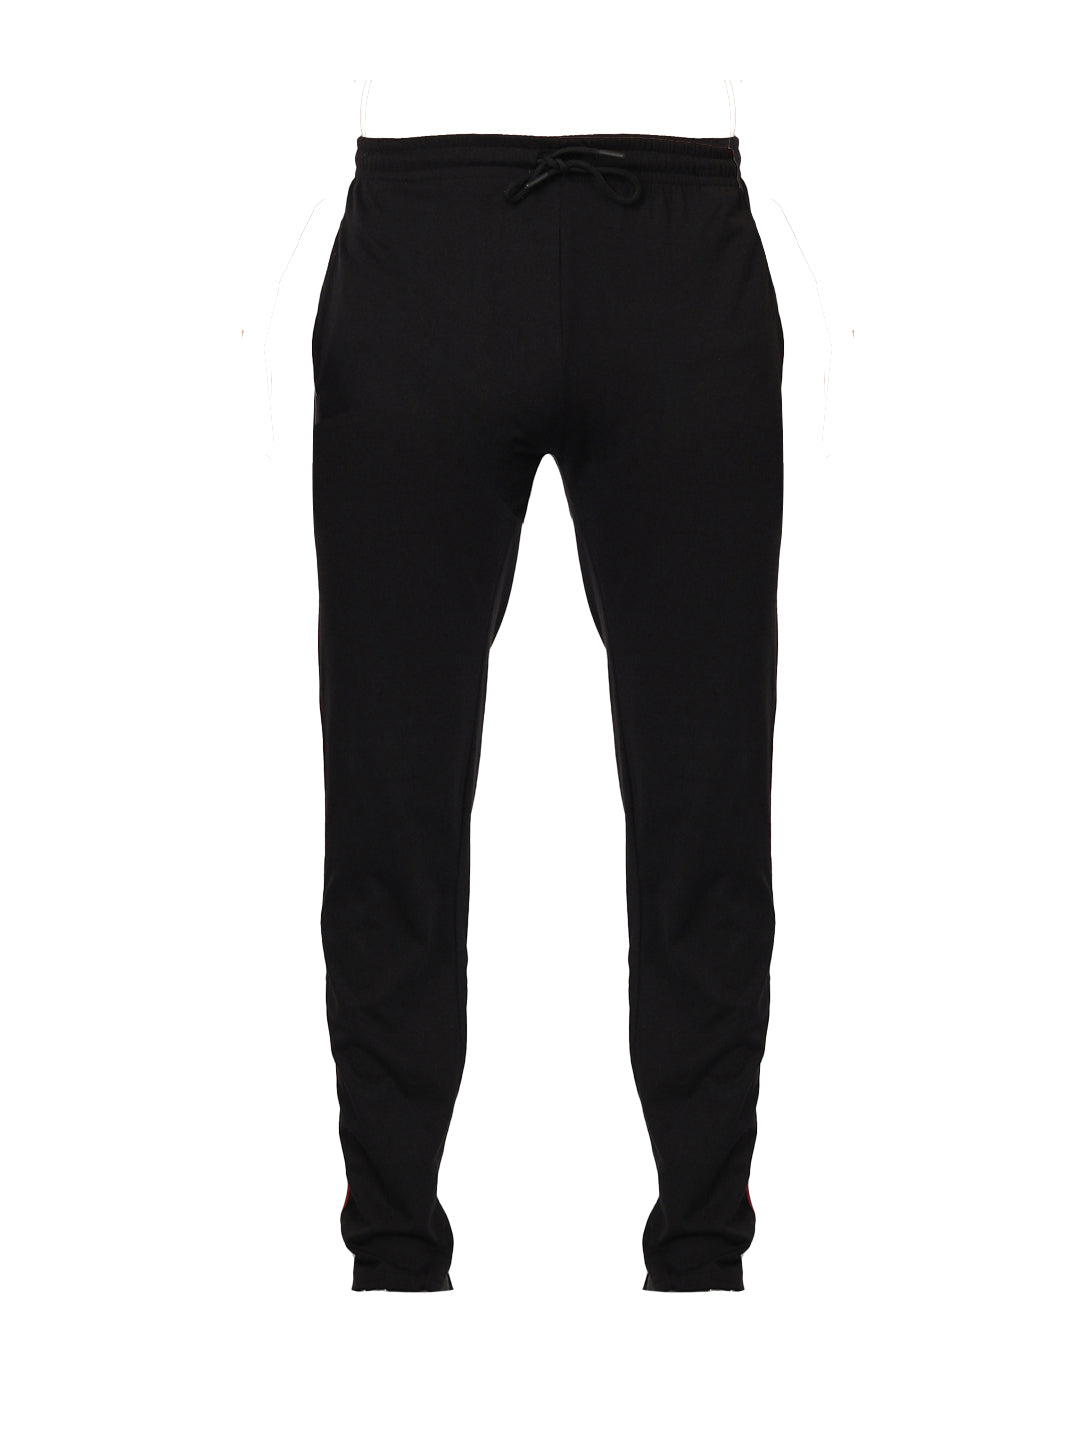 Buy Black Cotton Track Pants For Men Online: TT Bazaar